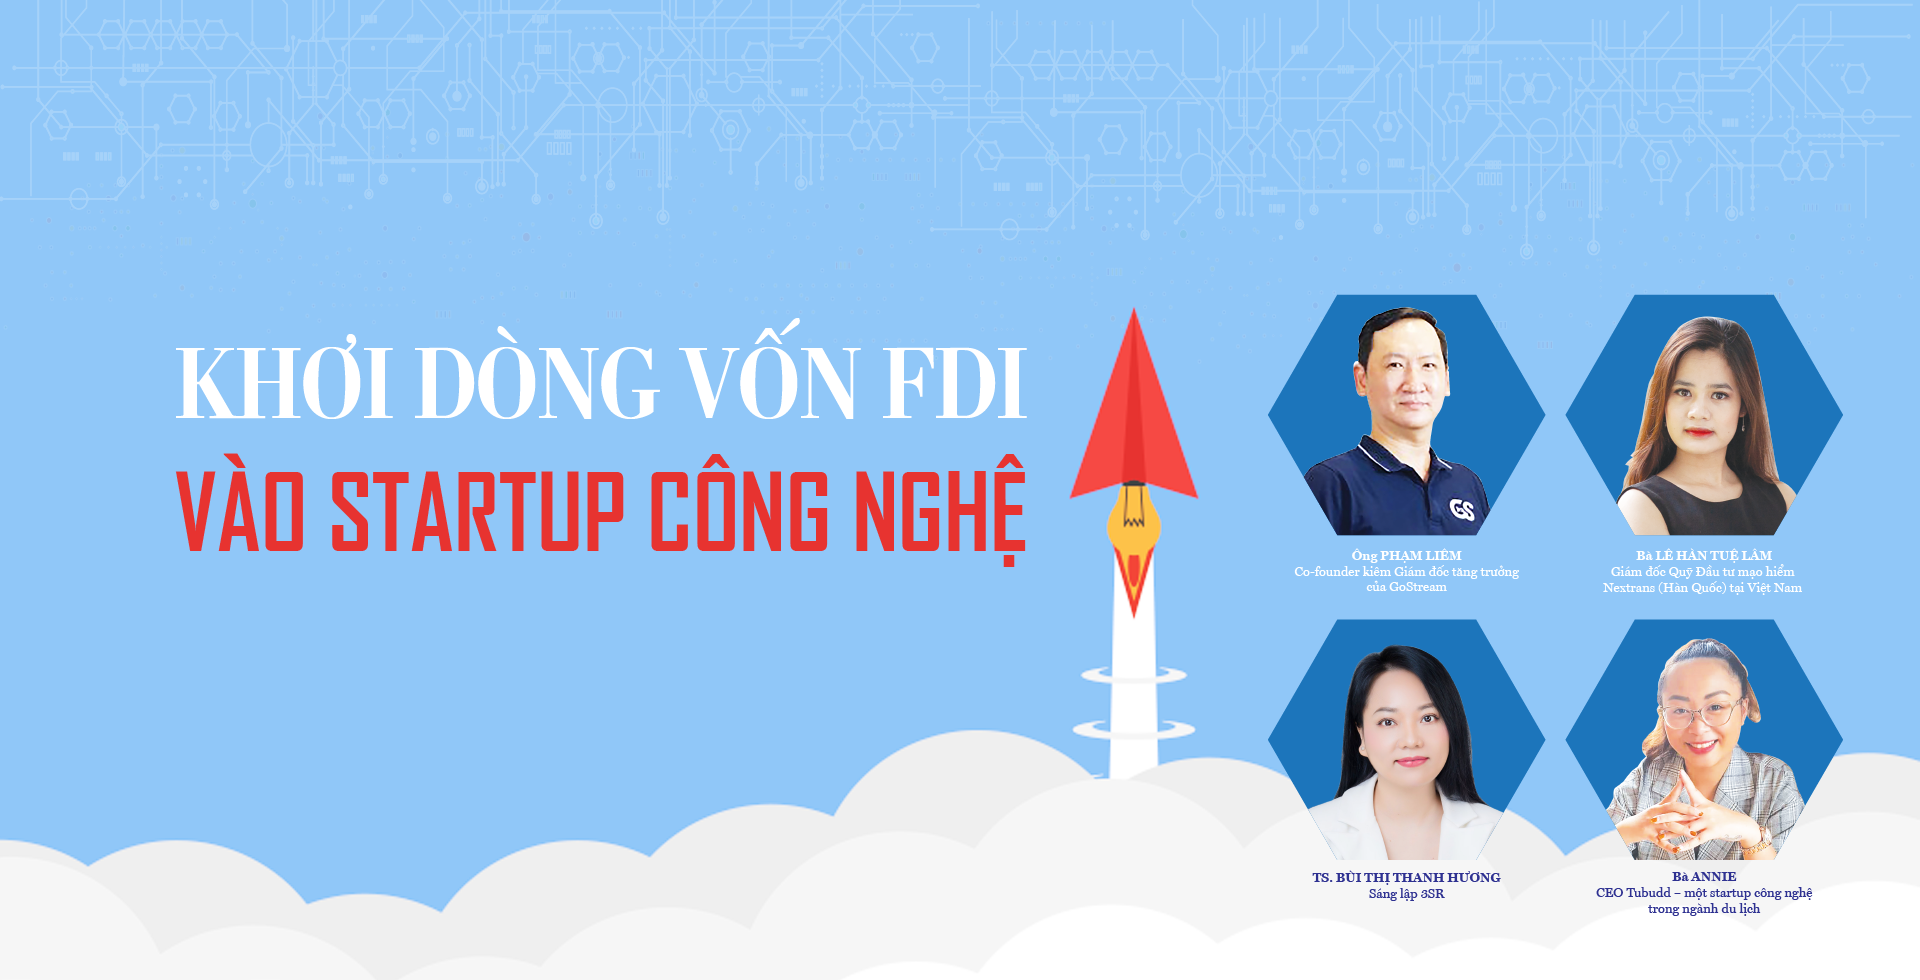 Khơi dòng vốn FDI vào startup công nghệ - Ảnh 1